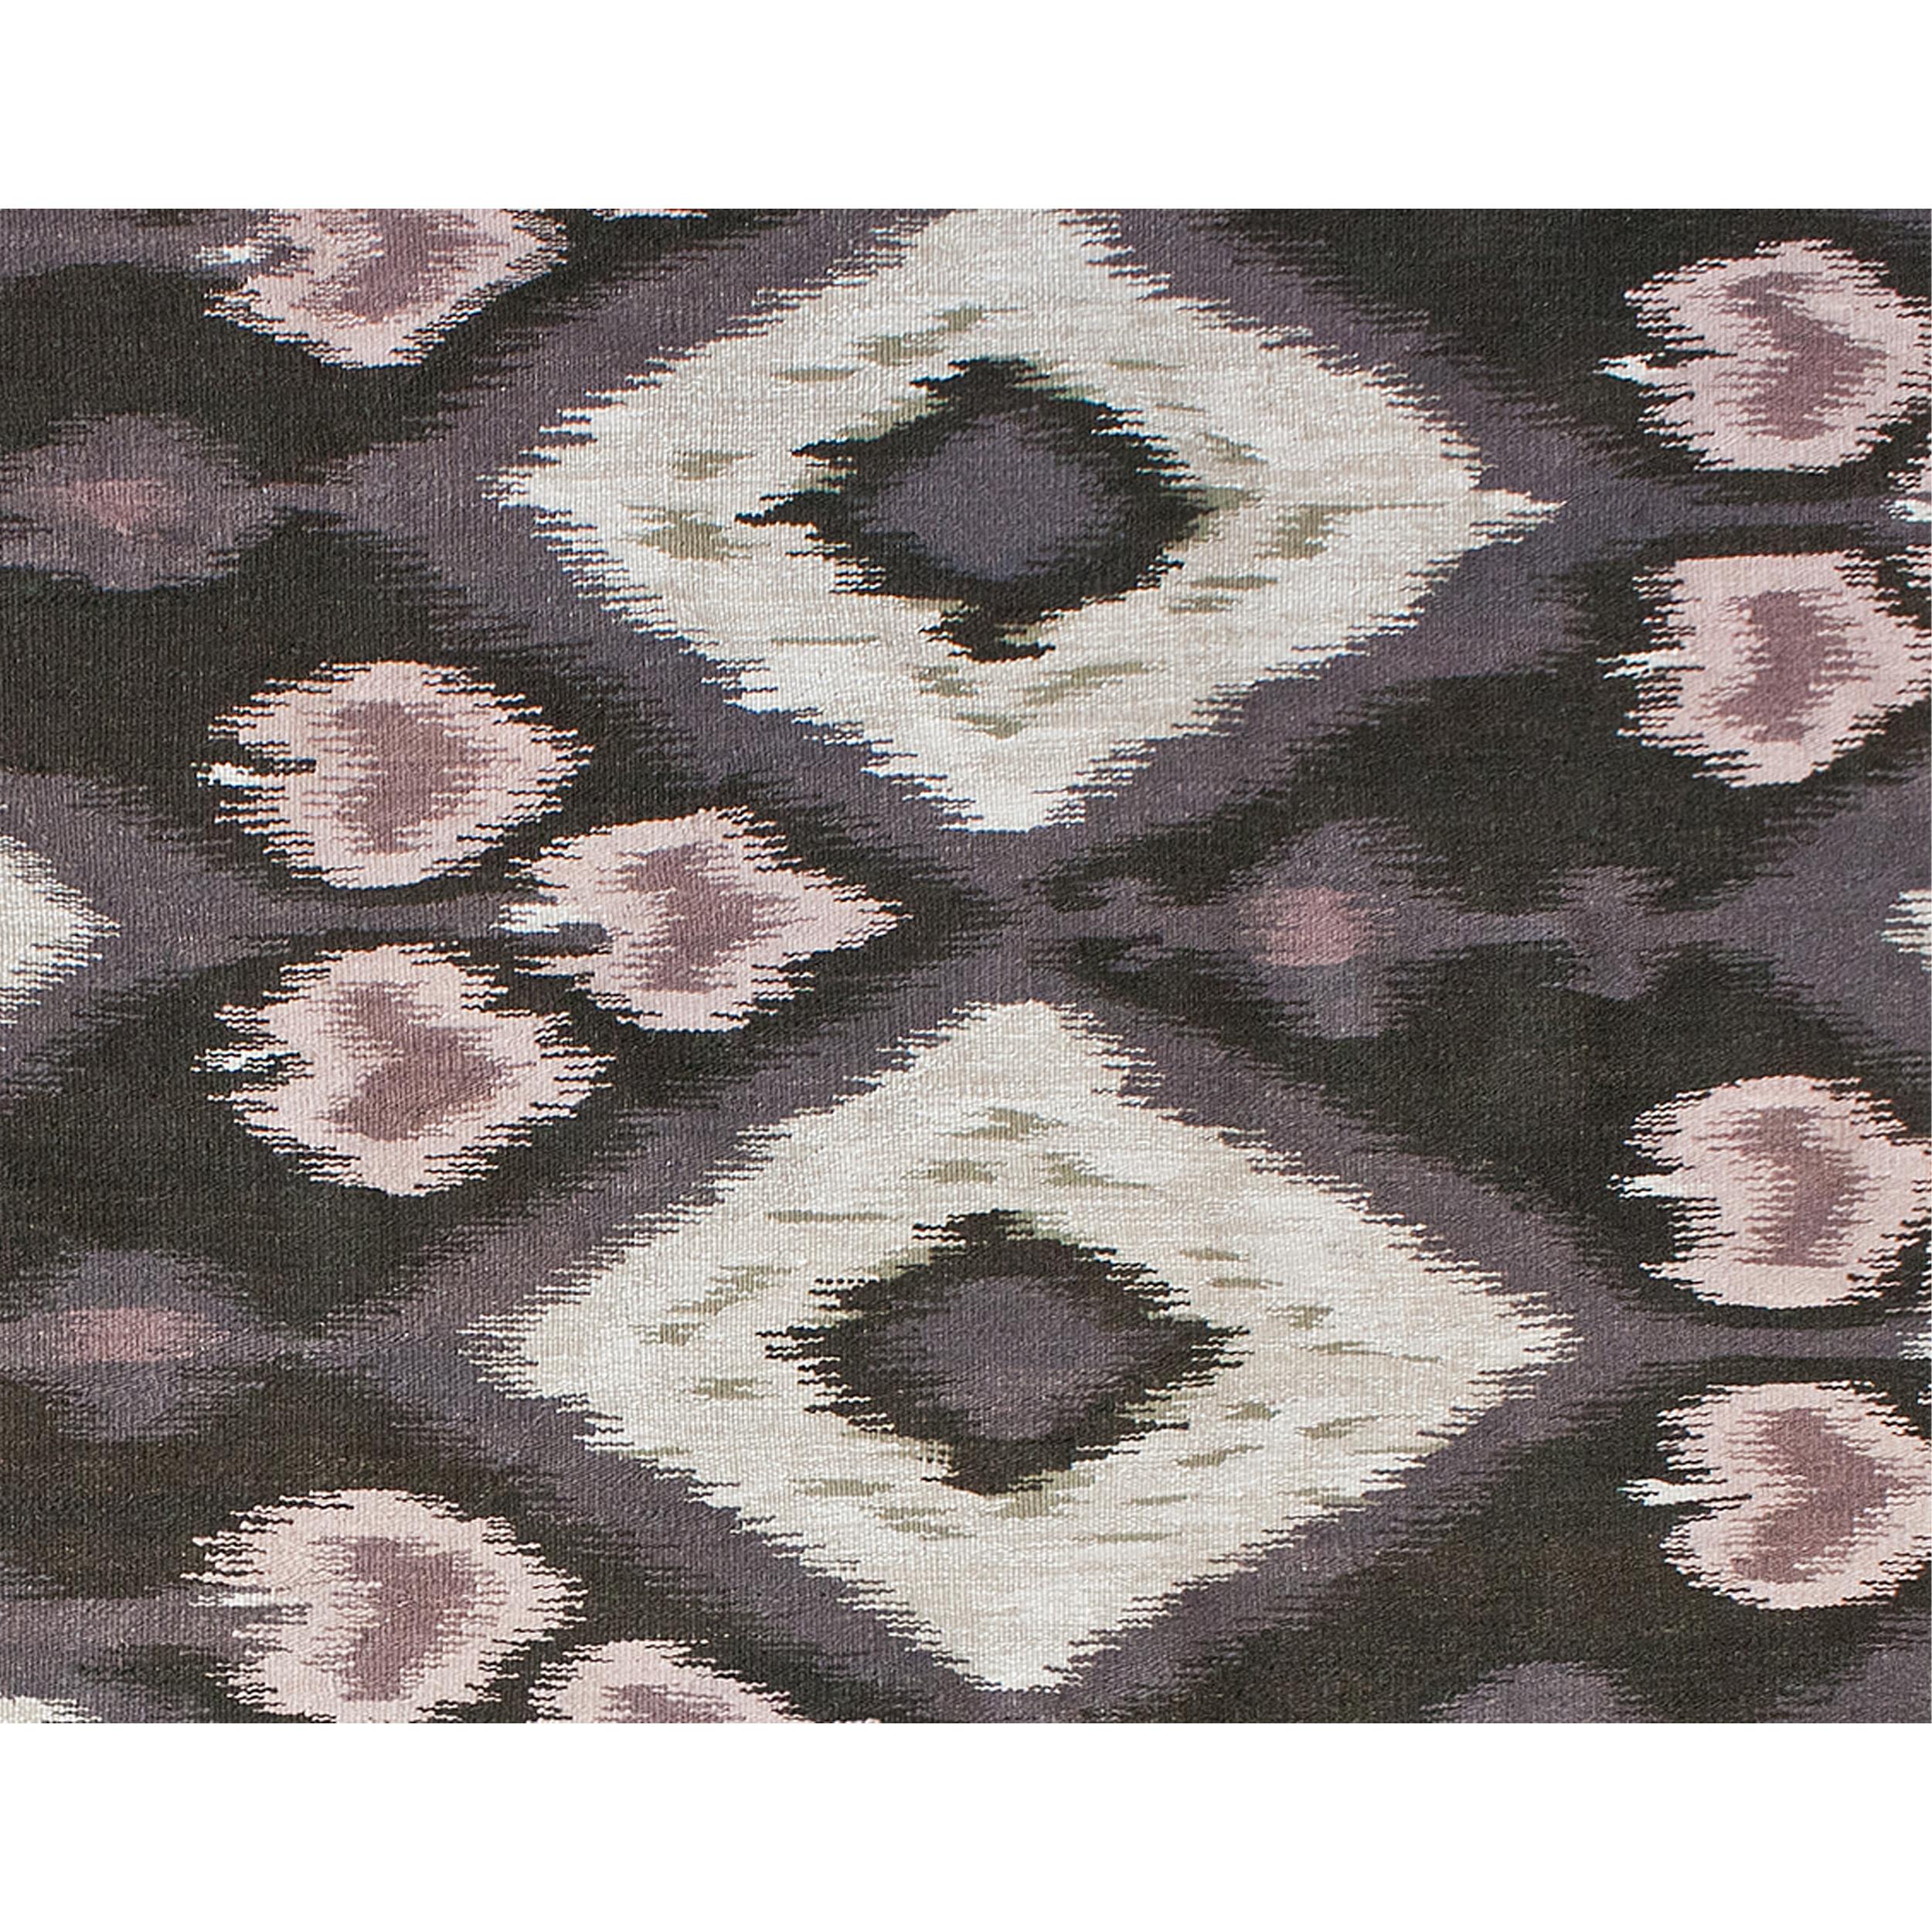 Luxuriöser, moderner, handgeknüpfter Teppich aus China mit einzigartigem, unverwechselbarem Aussehen, der sich als das schönste Stück in jedem Haus präsentiert. Das minimalistische Design verleiht einen sehr modernen Look und ist die perfekte